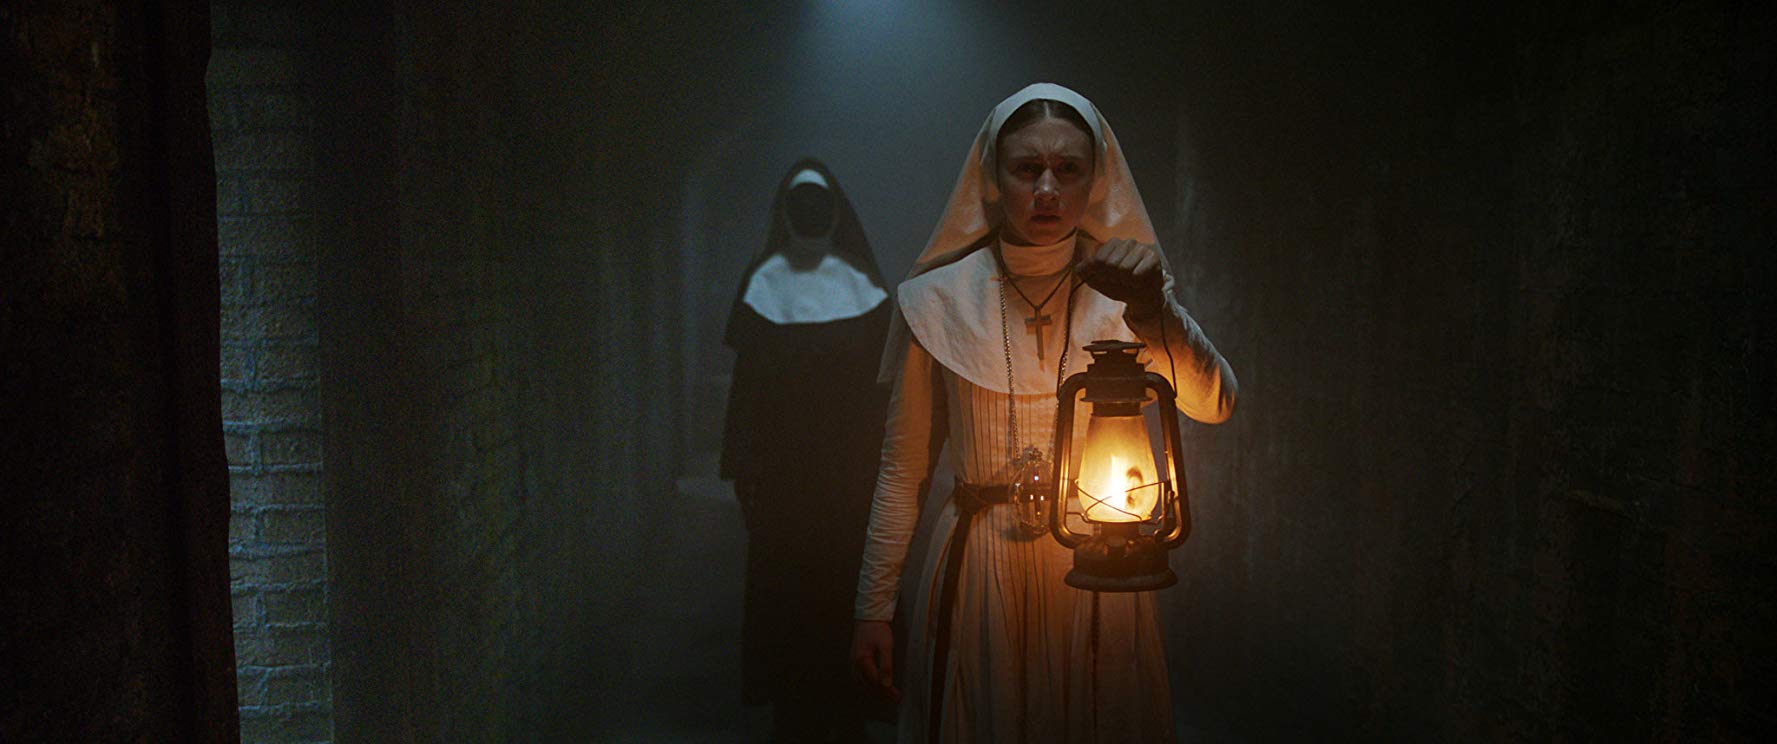 Review: Jadi ‘The Nun’ itu Film Horor atau Video Klip Musik Metal, ya?